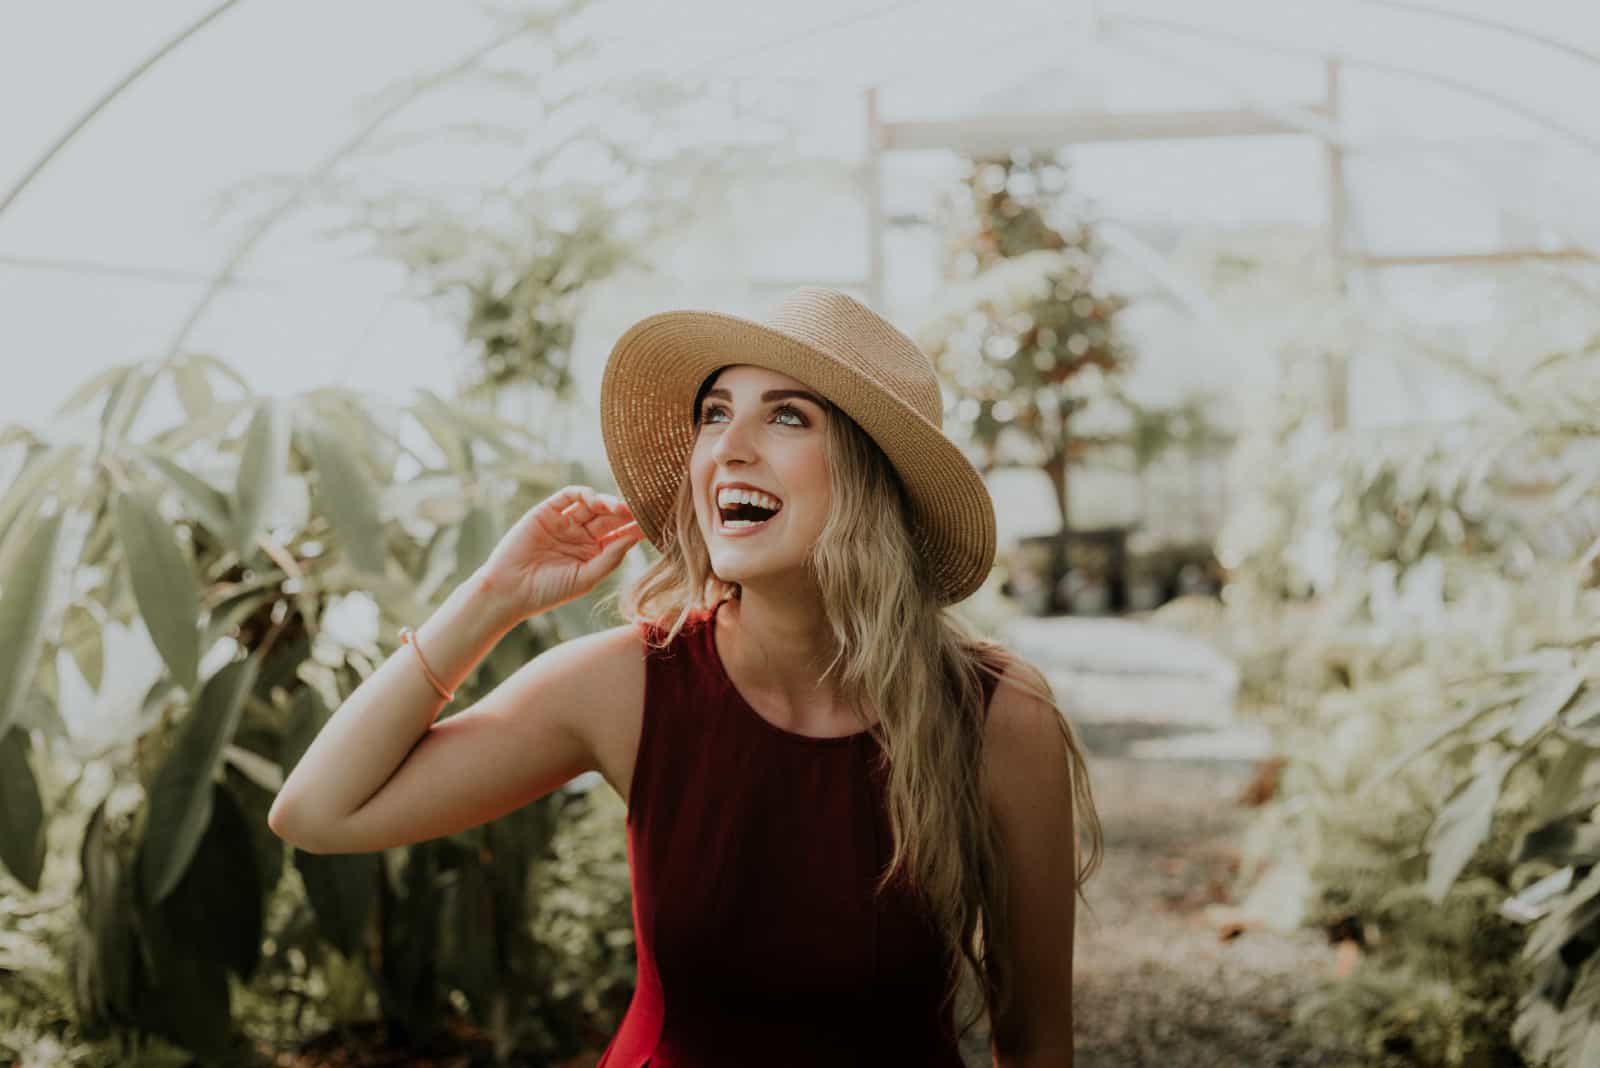 femme heureuse avec un chapeau debout près de plantes